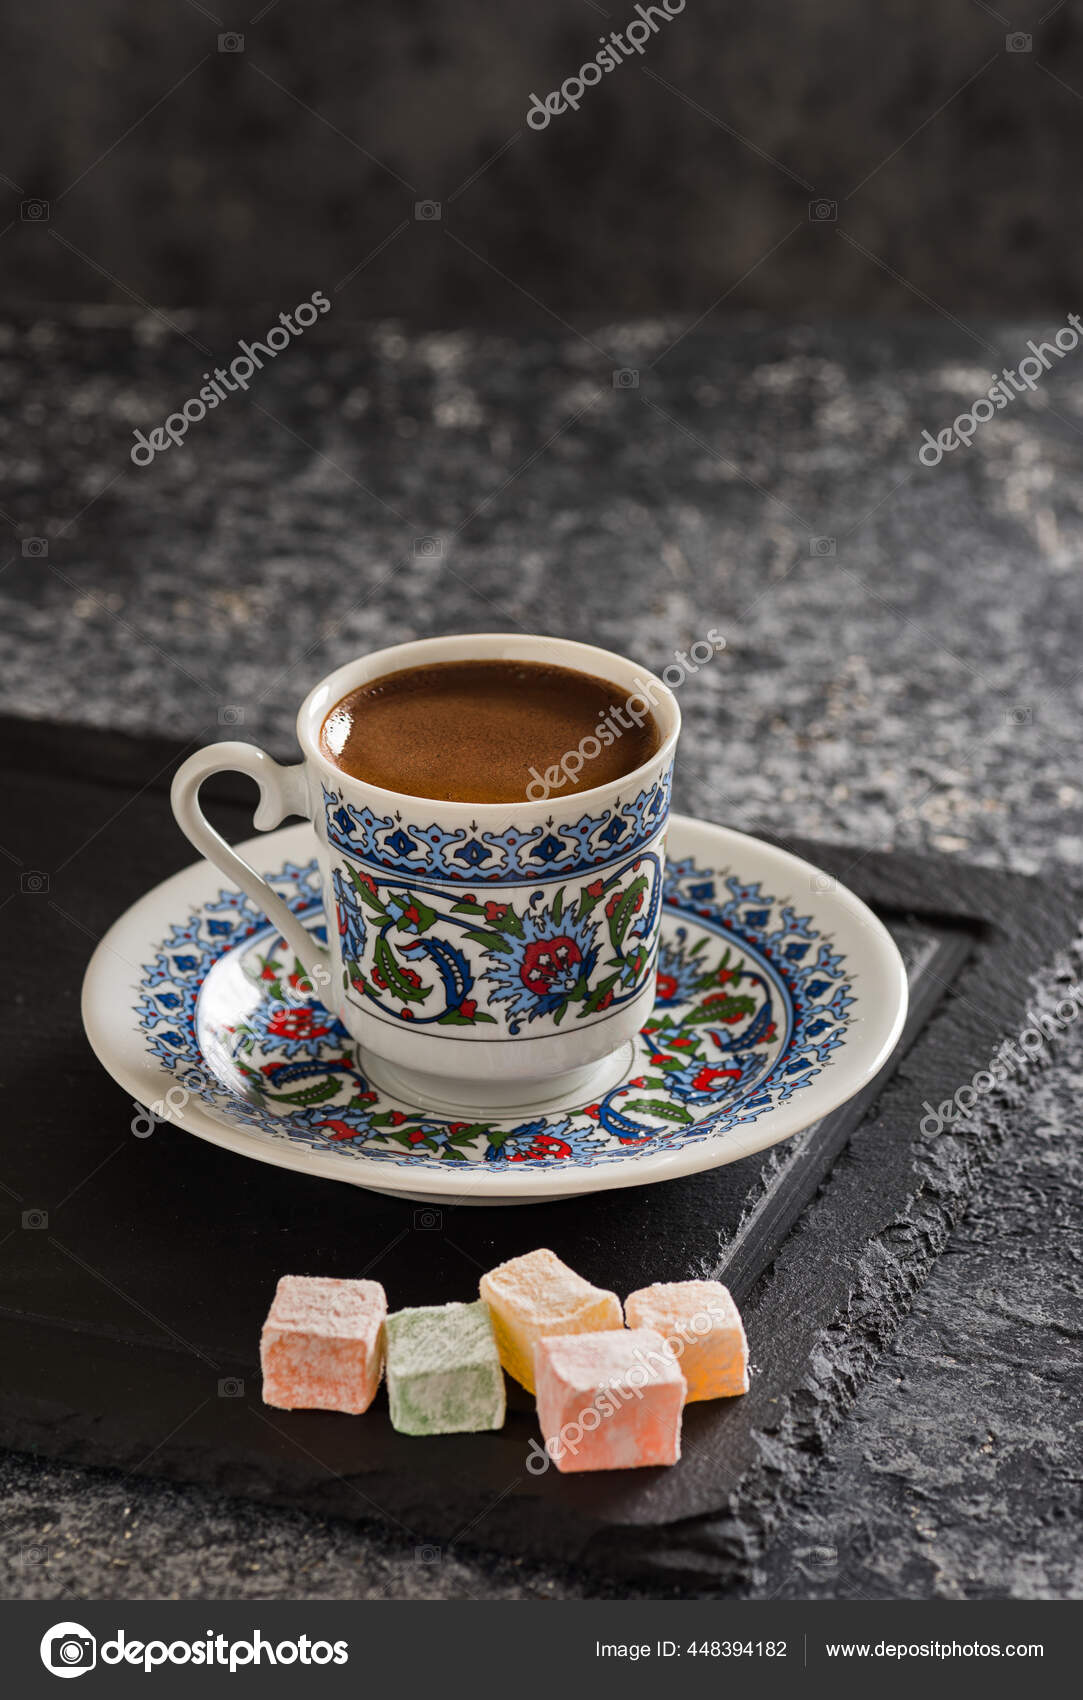 Café turc instantané